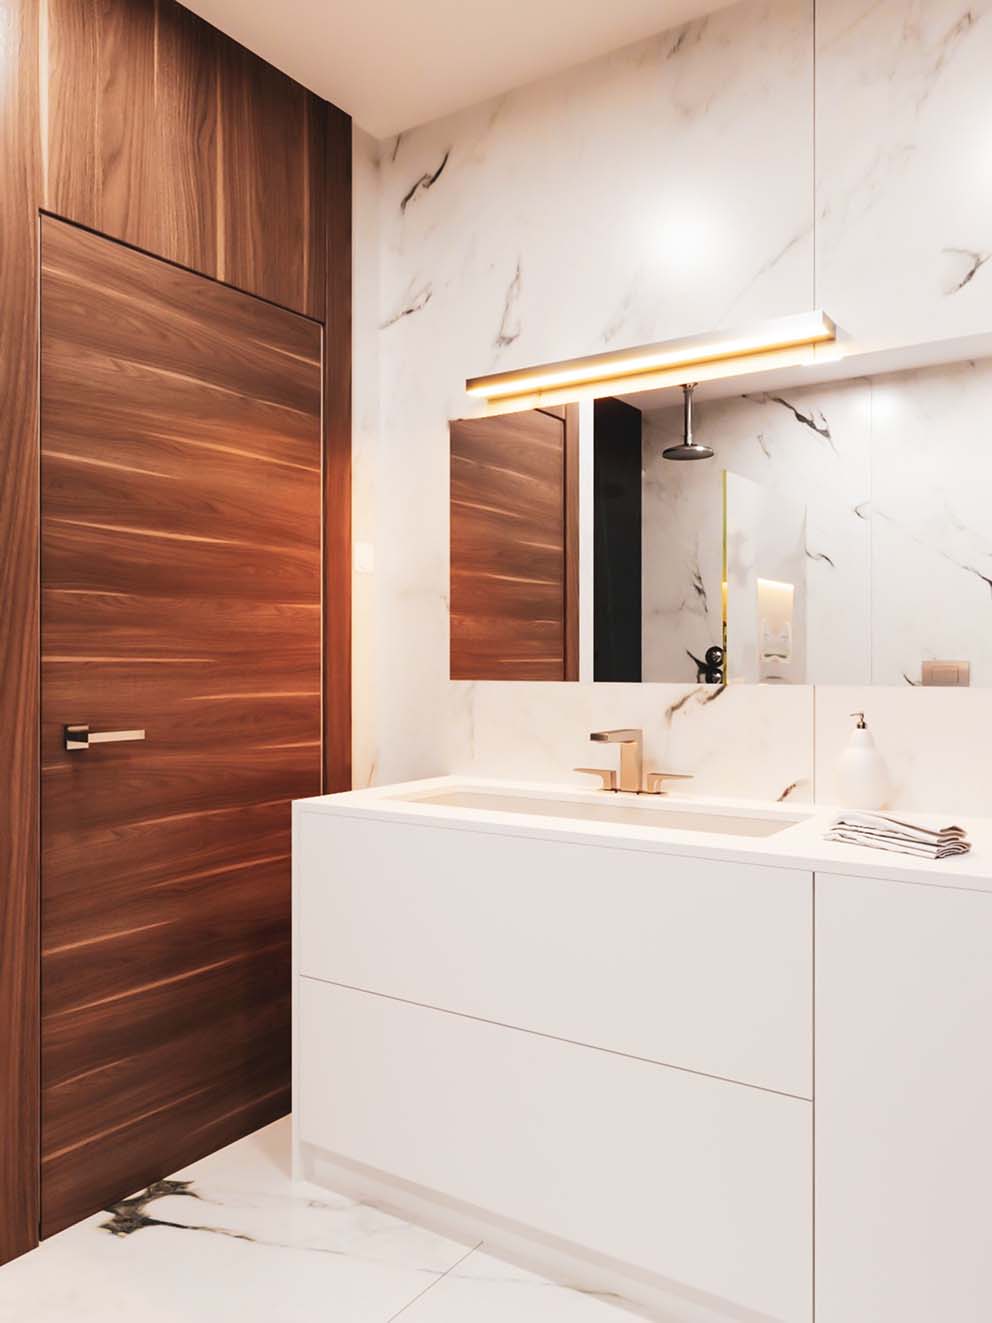 Weiße Badezimmerkonsole mit Marmor-verfliester Wand, Holz-vertäfelter Wand und Marmor-verfliestem Boden.